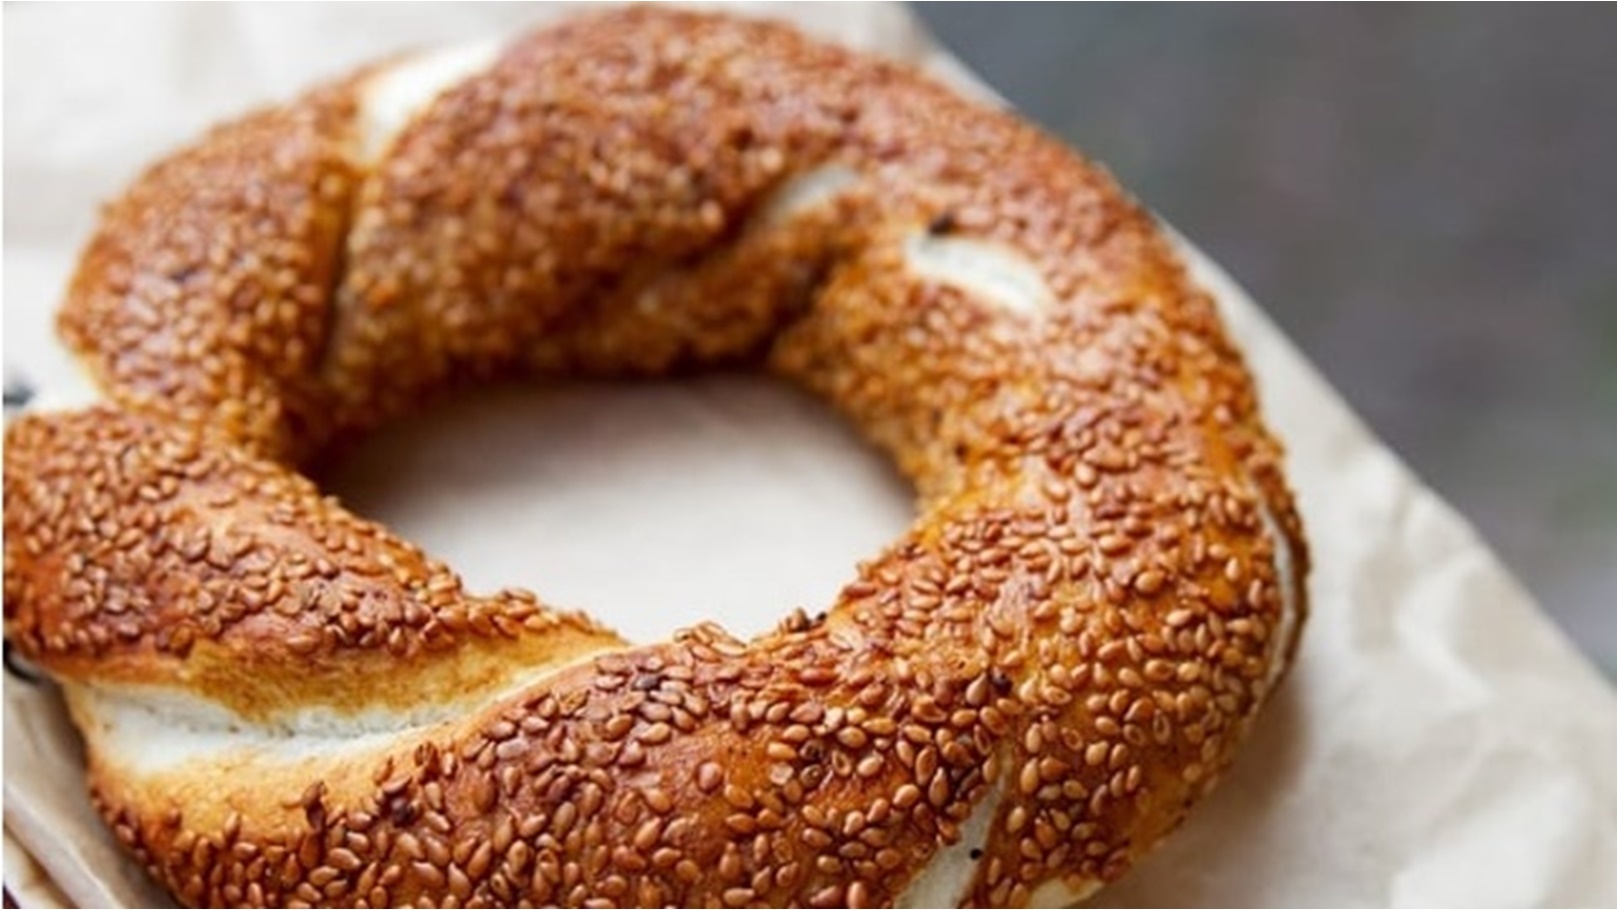 طريقة عمل خبز الزبدة التركي بمكونات سهلة وخطوات تحضير بسيطة وسريعة